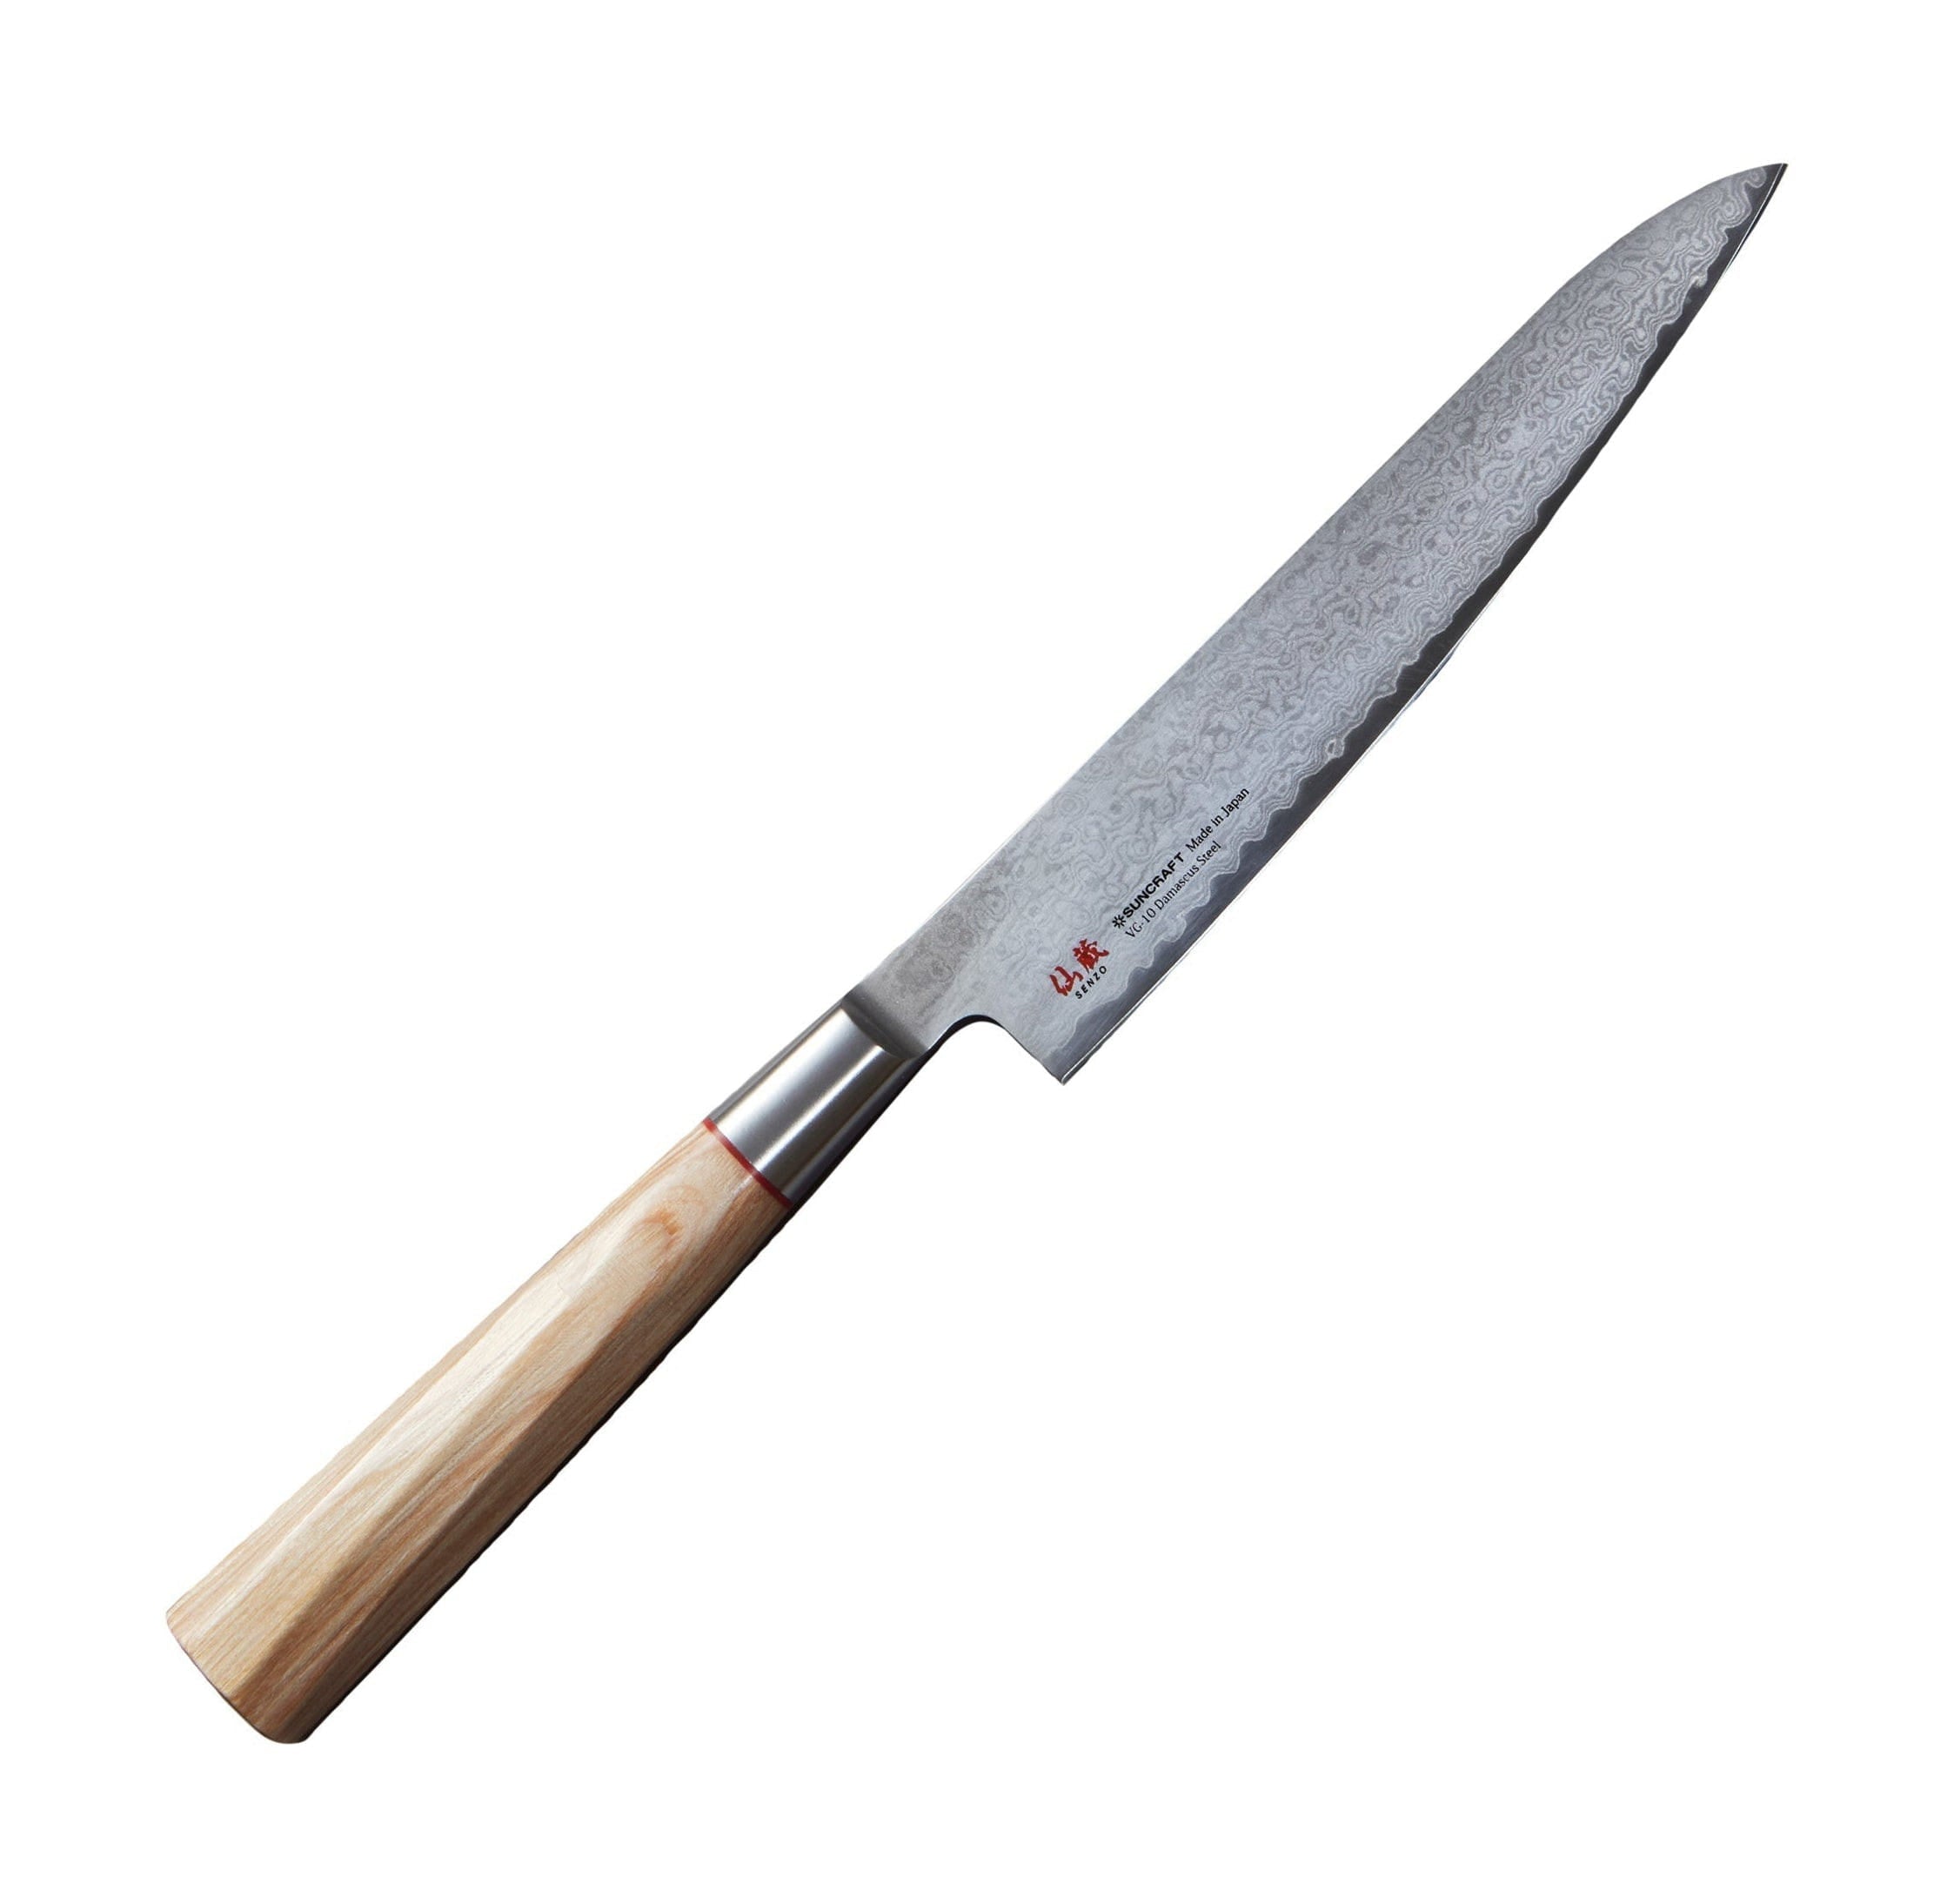 Senzo til 02 Universal Knife, 15 cm